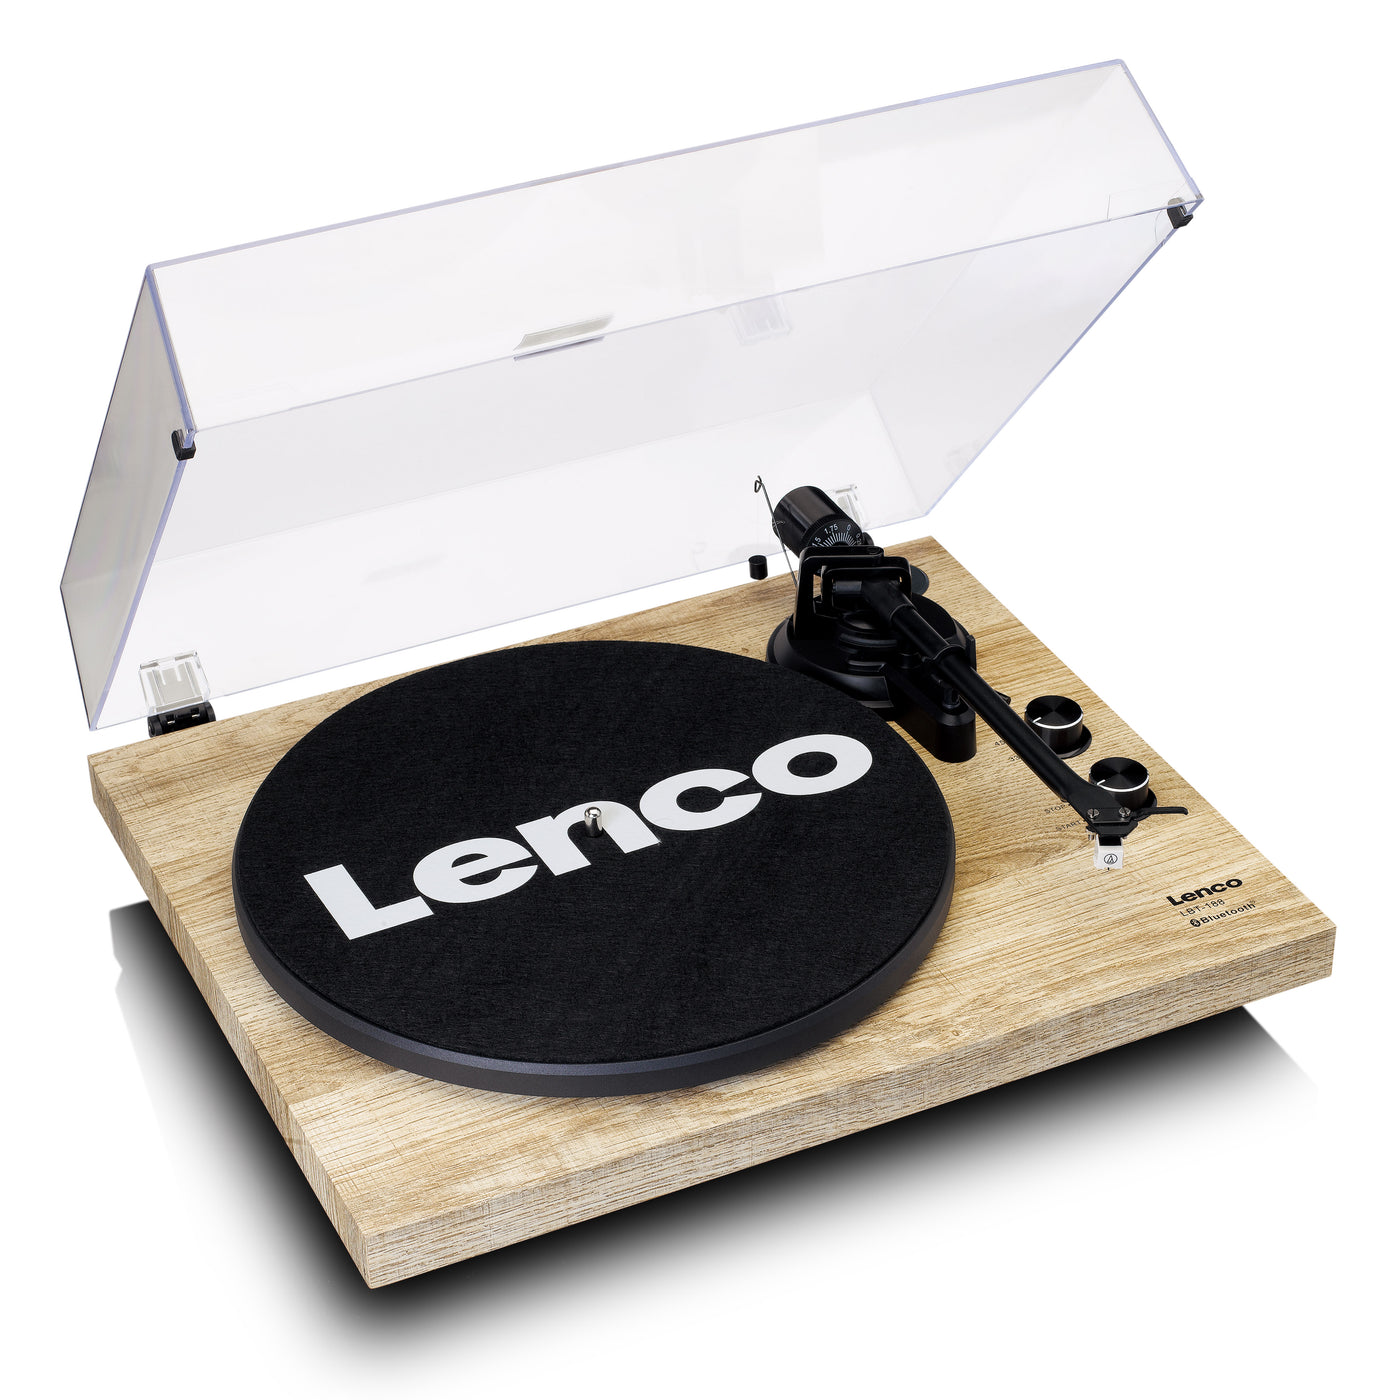 LENCO LBT-188PI - Gramofon z transmisją Bluetooth®, drewno